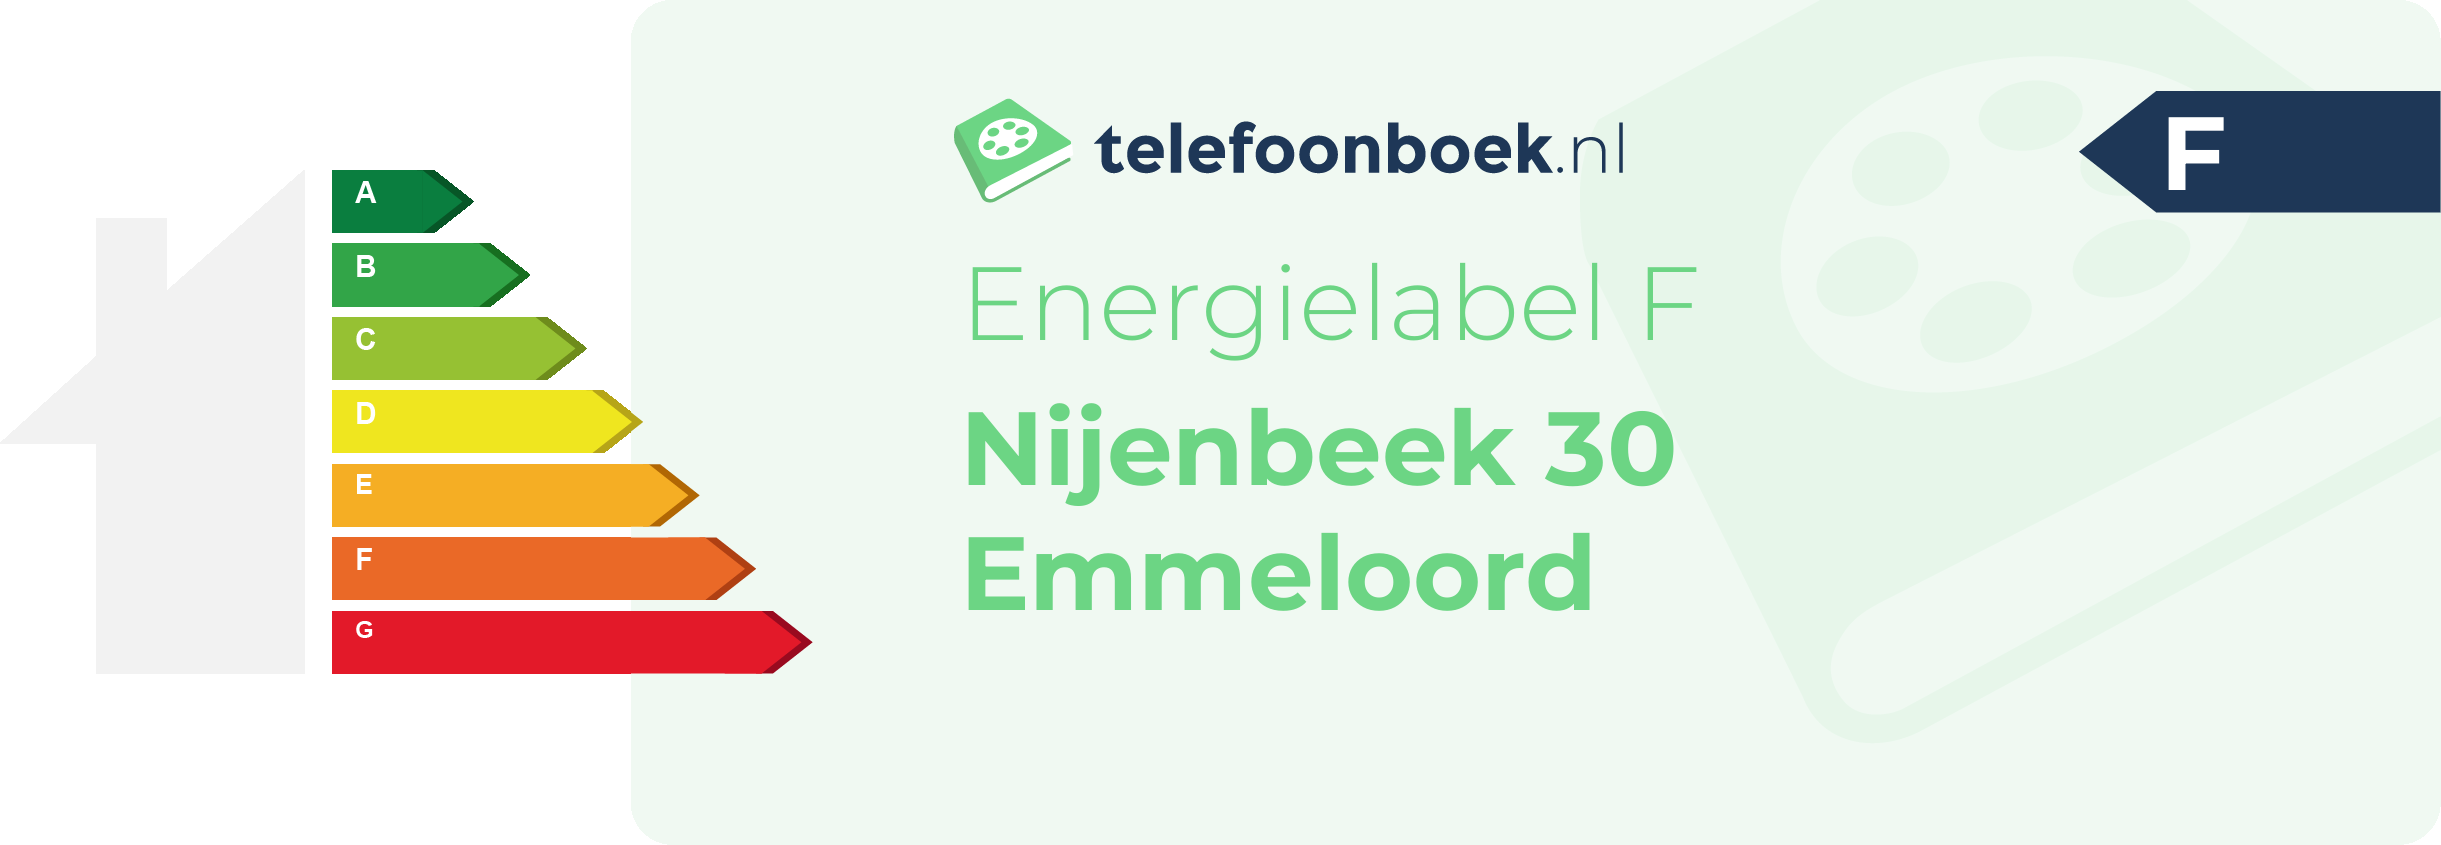 Energielabel Nijenbeek 30 Emmeloord